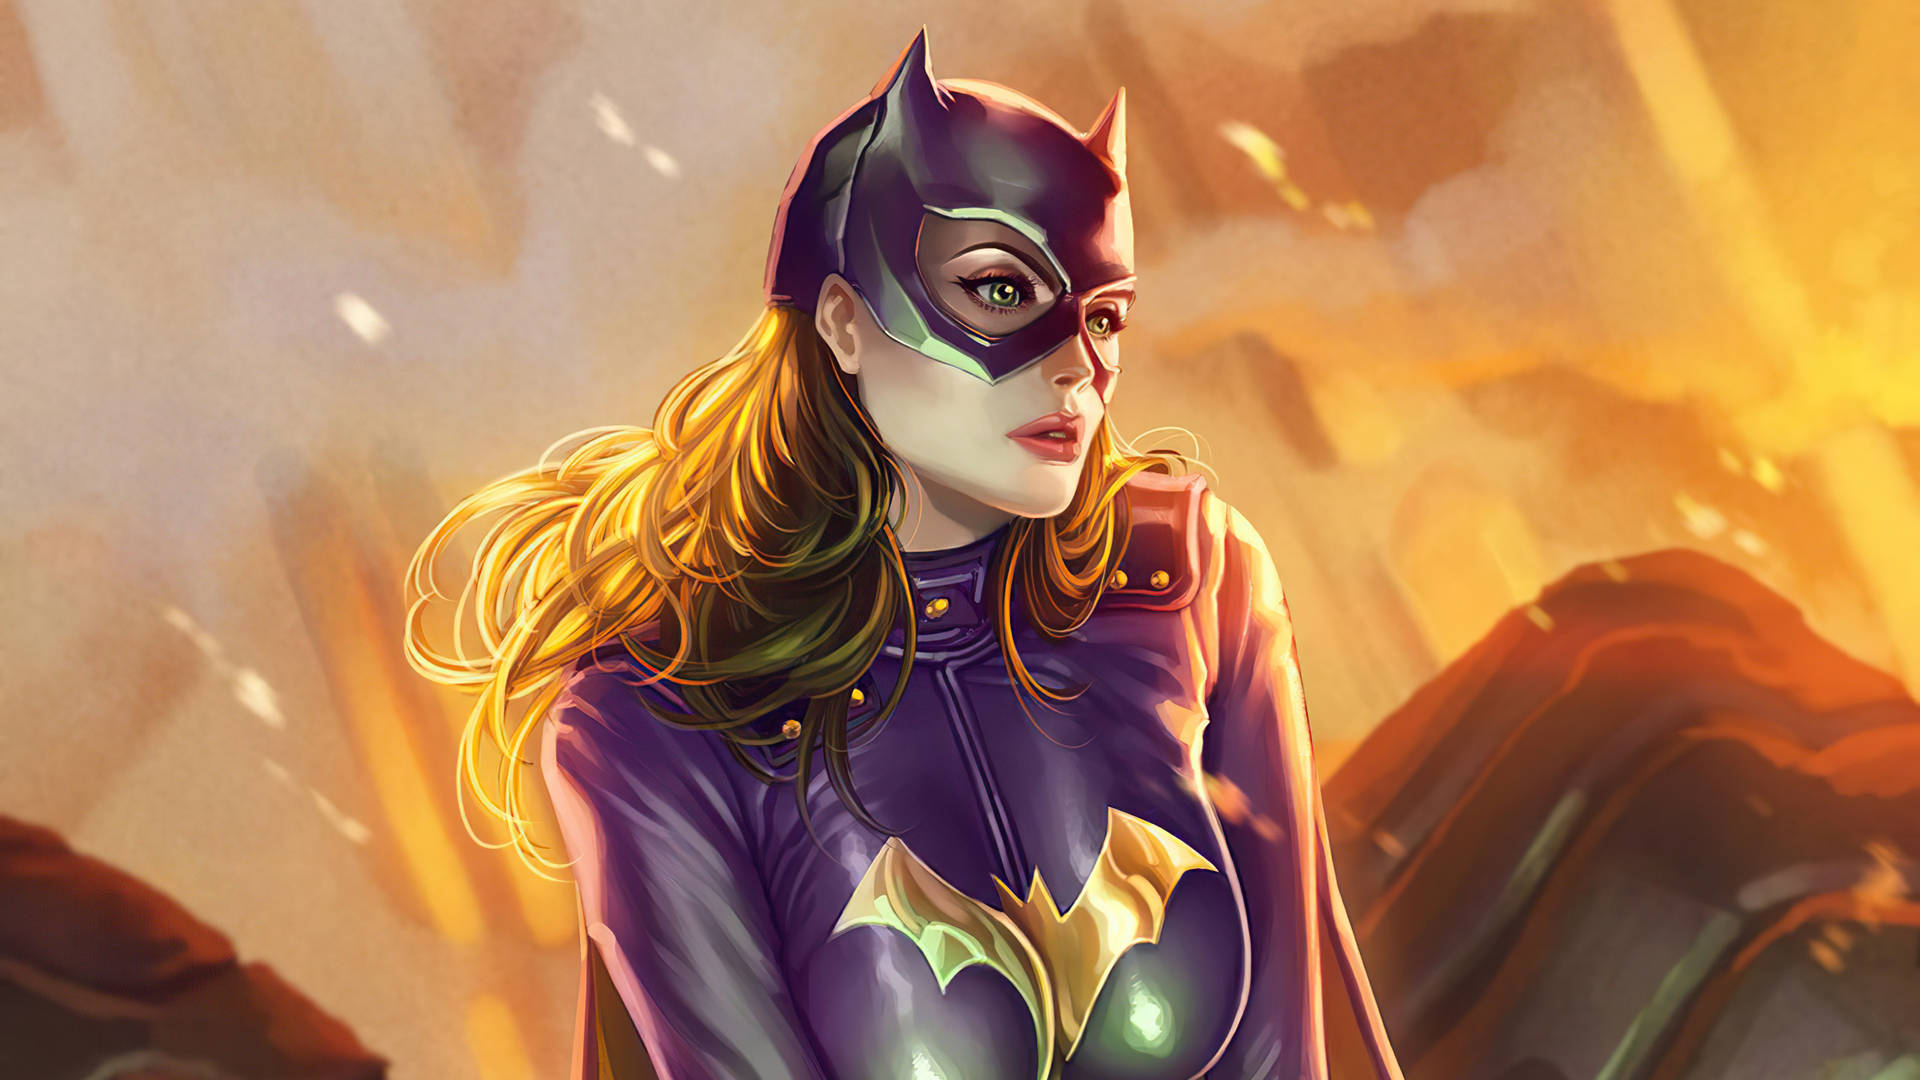 Pinturaen 3d De La Superheroína De Dc, Batgirl. Fondo de pantalla